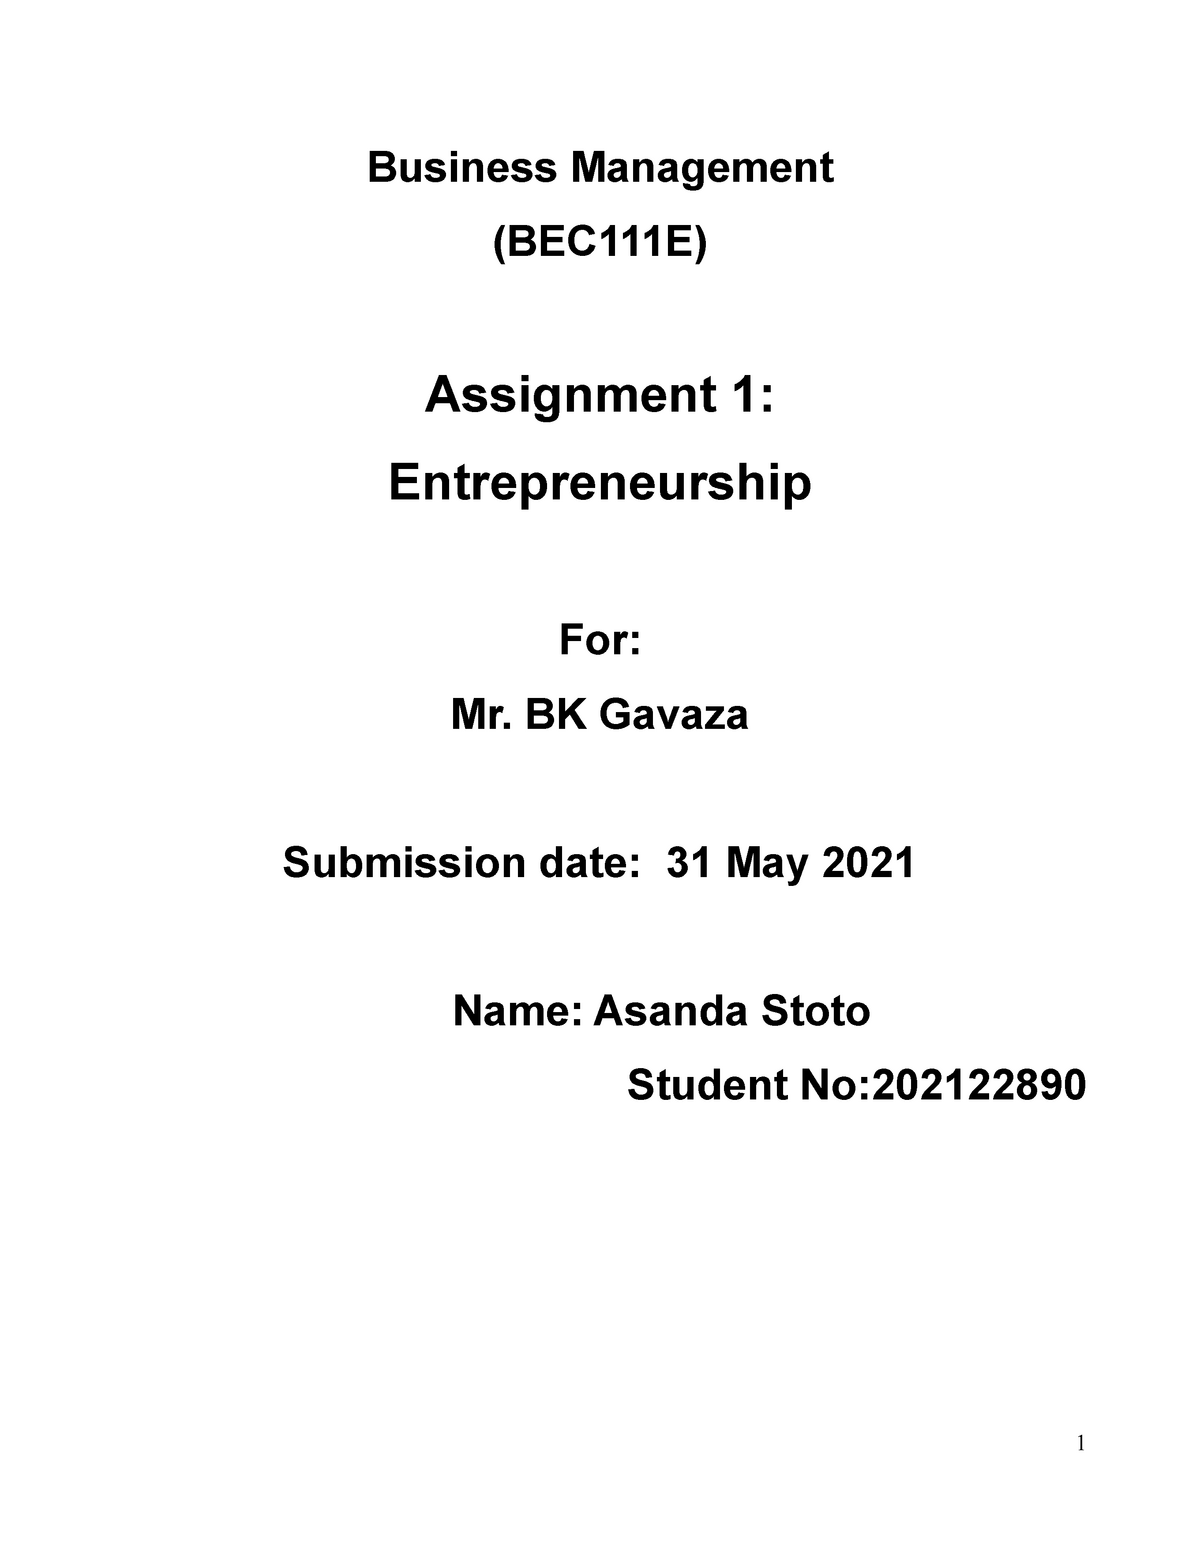 assignment business management